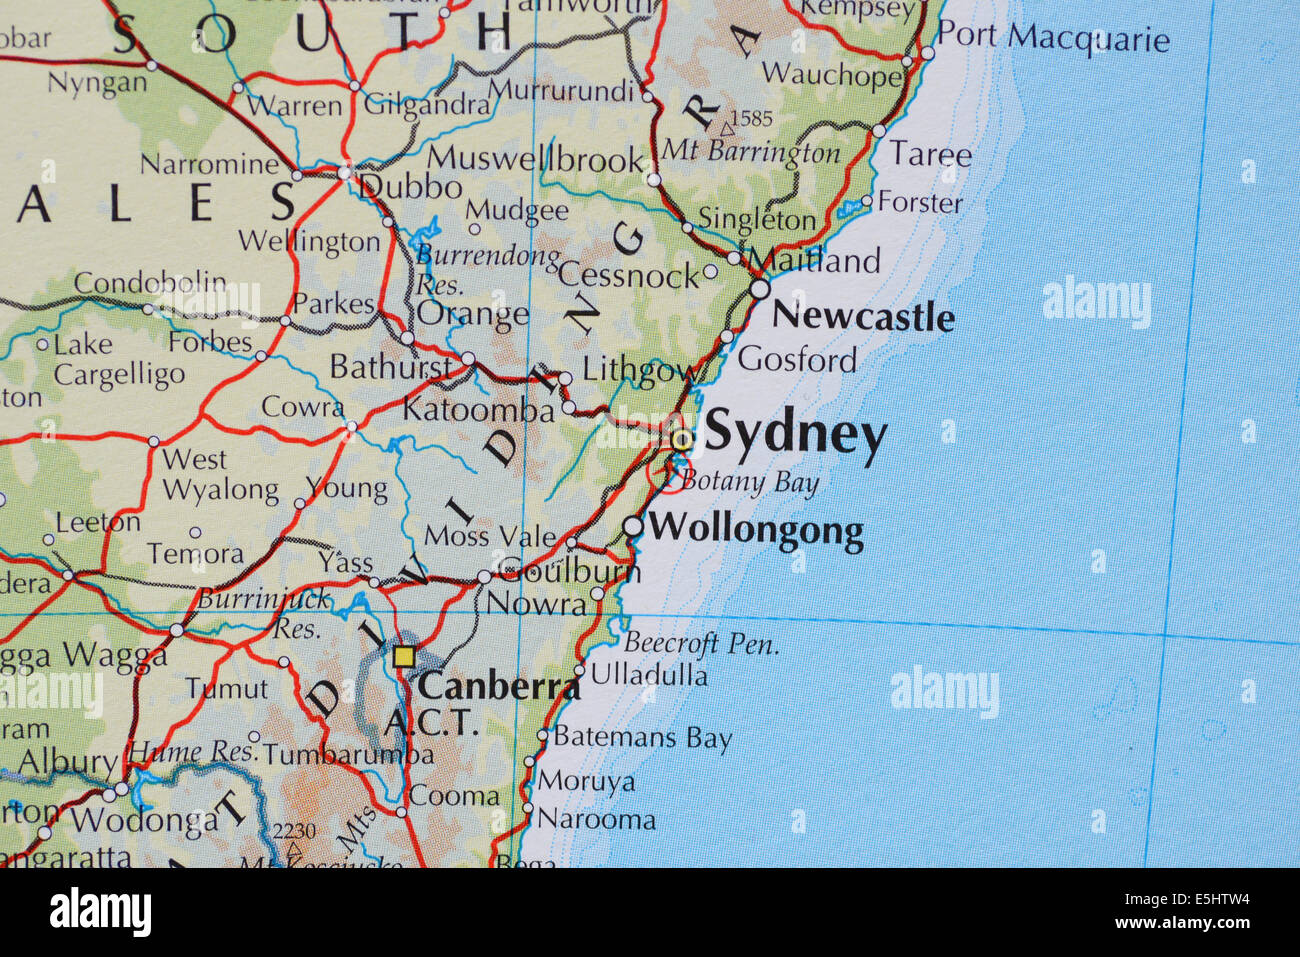 Atlas mapa mostrando las ciudades de Sydney, Nueva Gales del Sur, Australia y el Canberra, la capital australiana Foto de stock